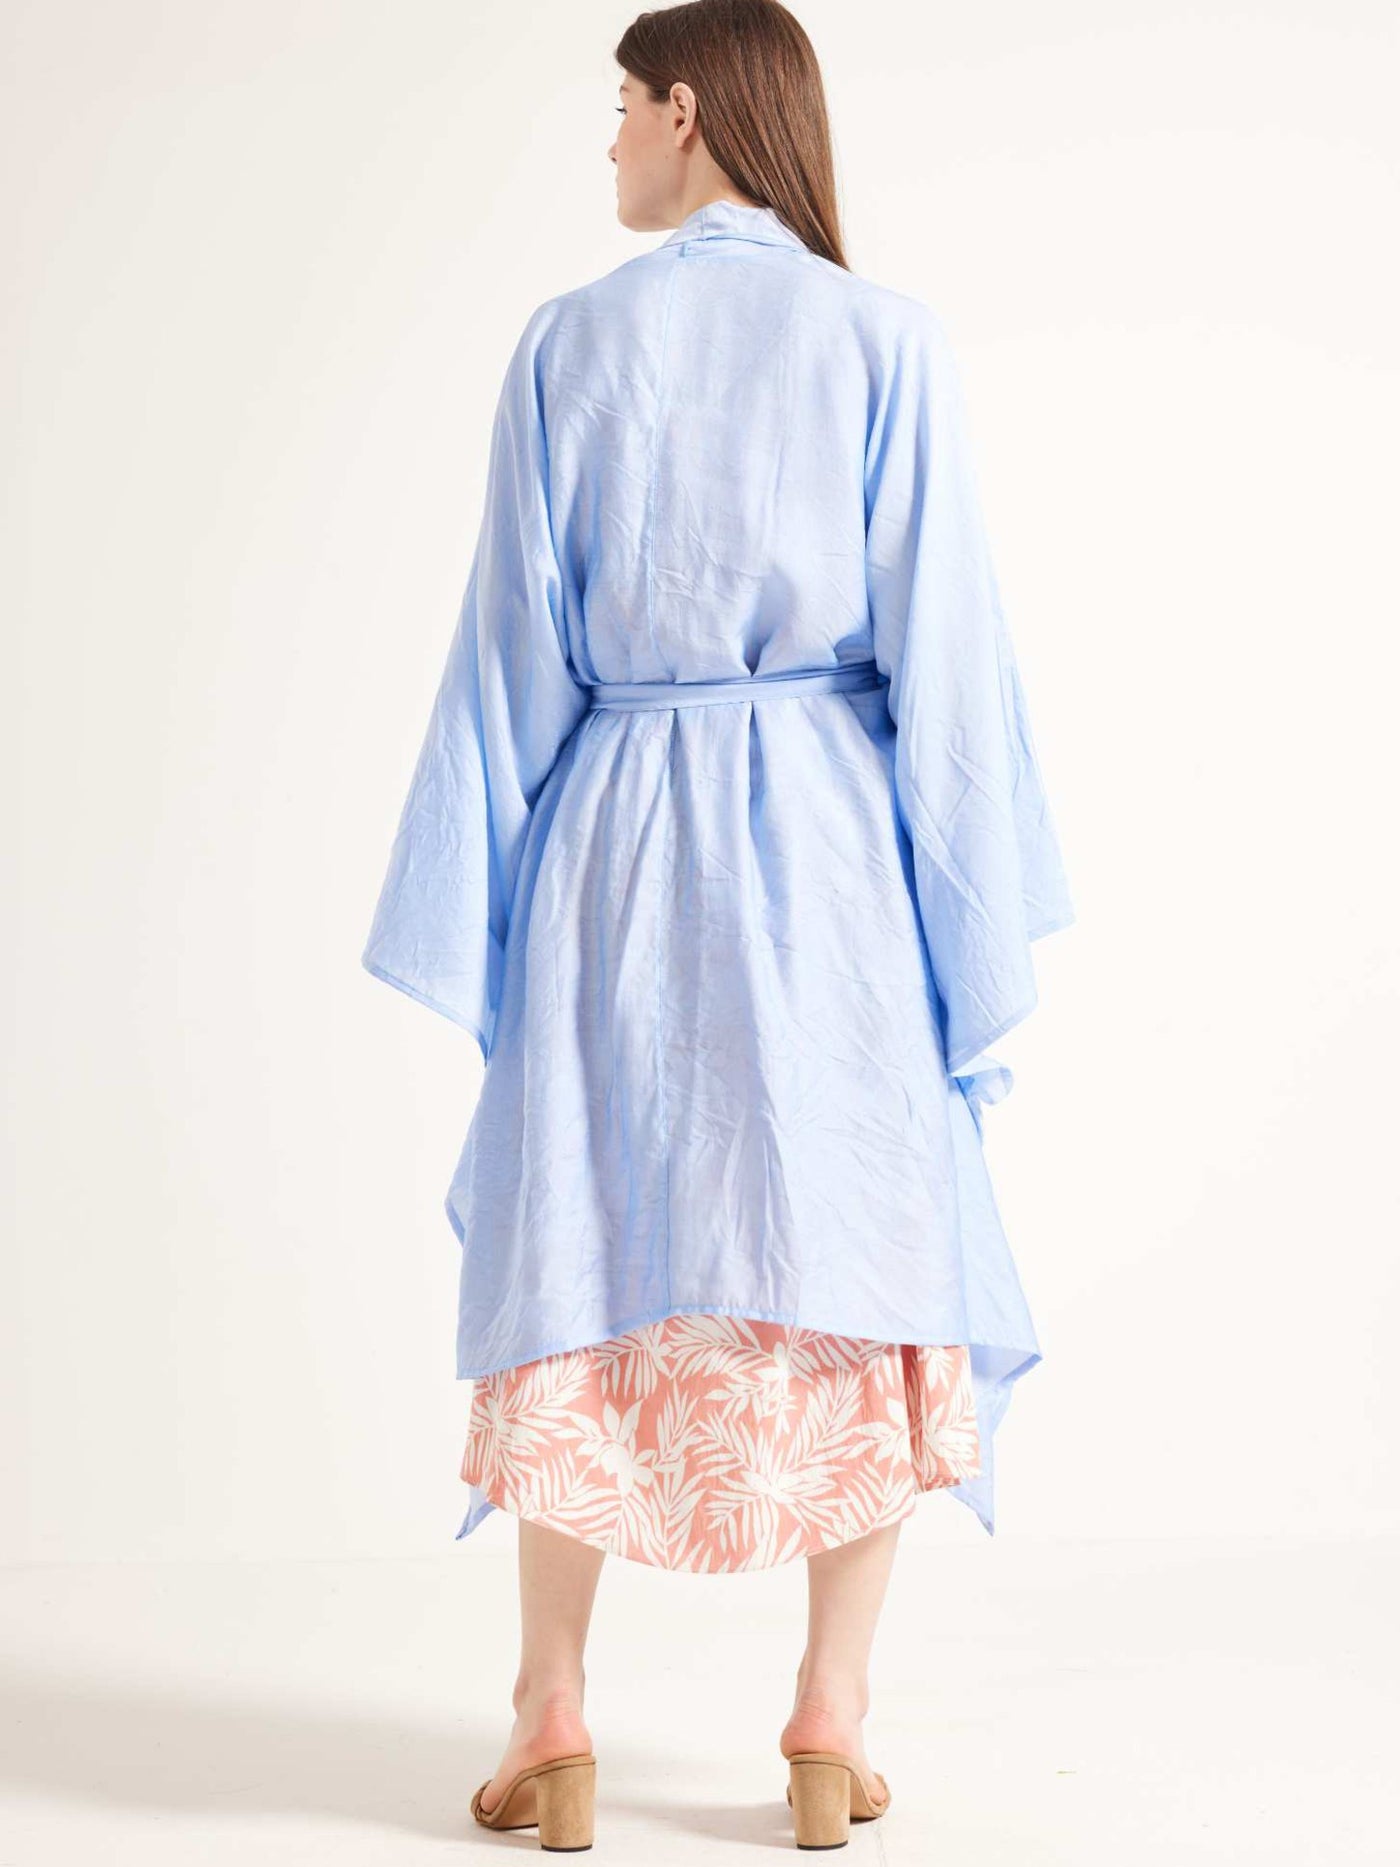 Kimono - Sheer